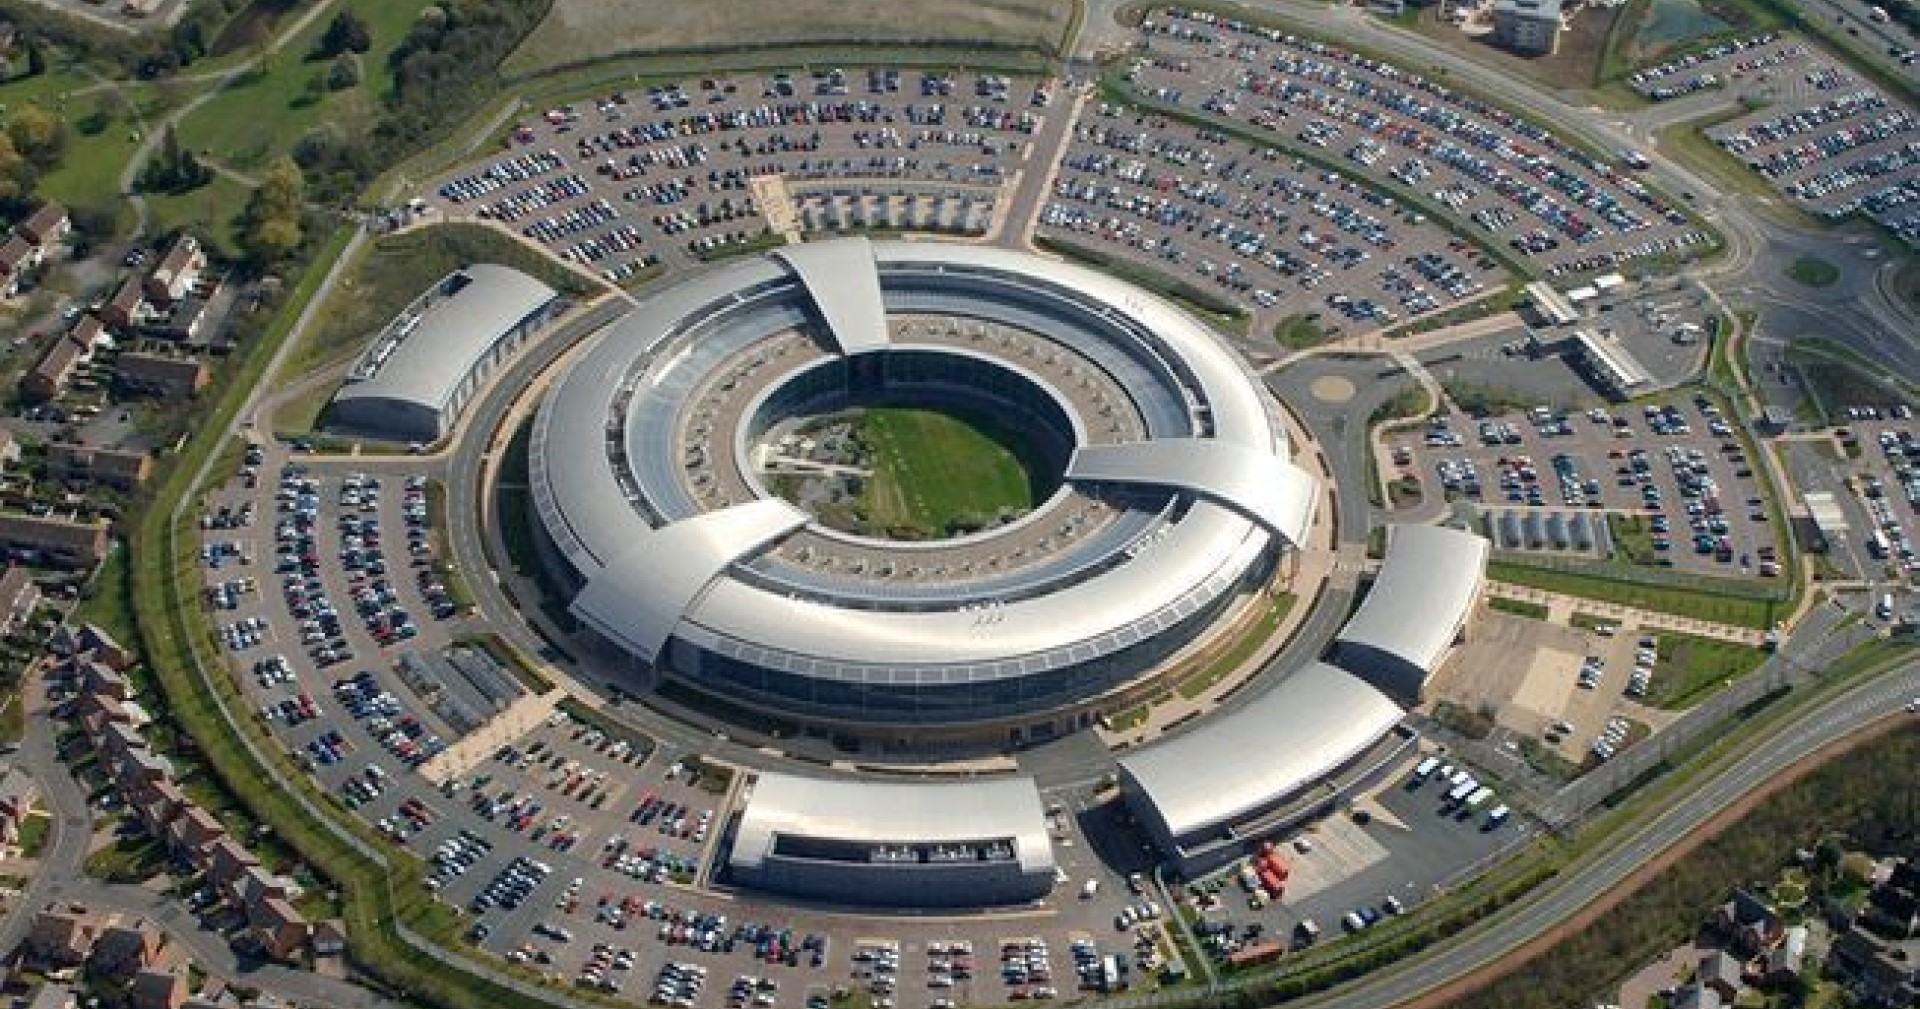 LockBit ปล่อยข้อมูลลับของหน่วยความมั่นคงสหราชอาณาจักรจำนวนหลายพันหน้า